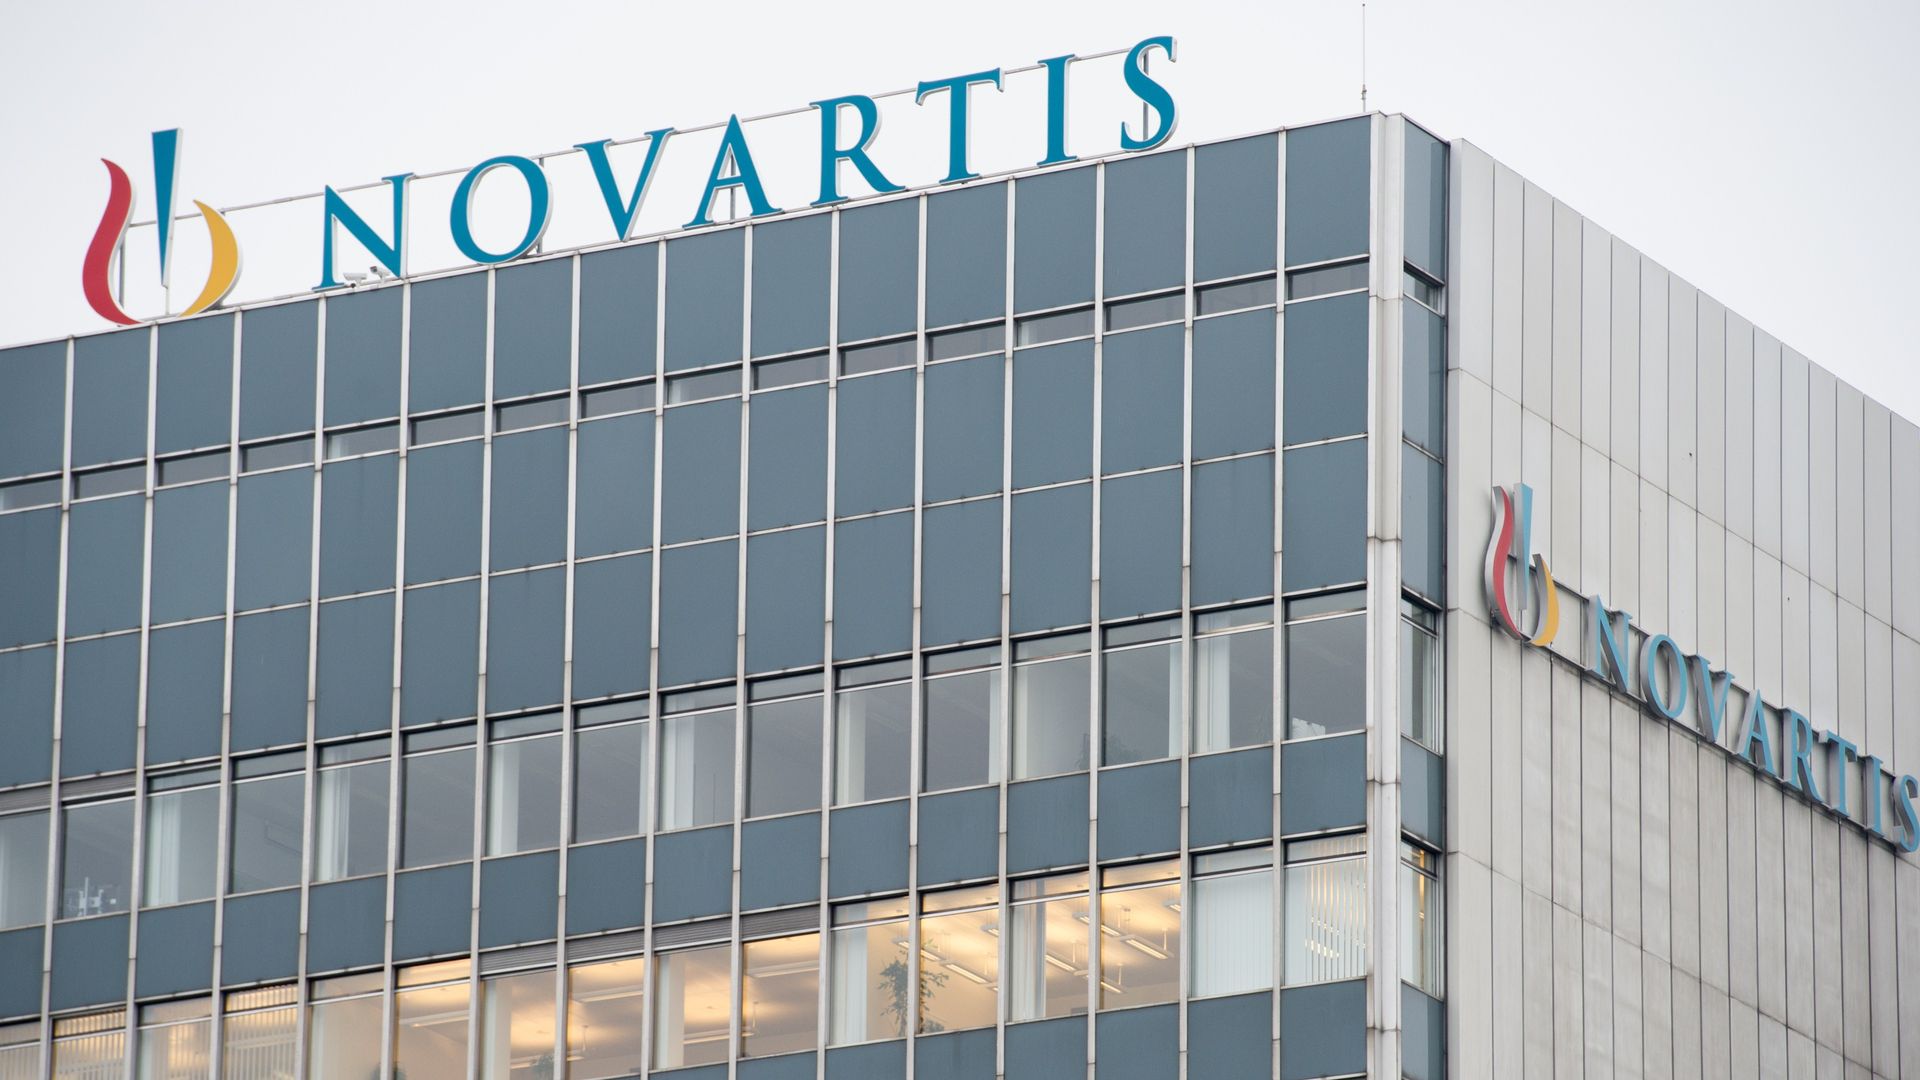 Swiss headquarters Novartis